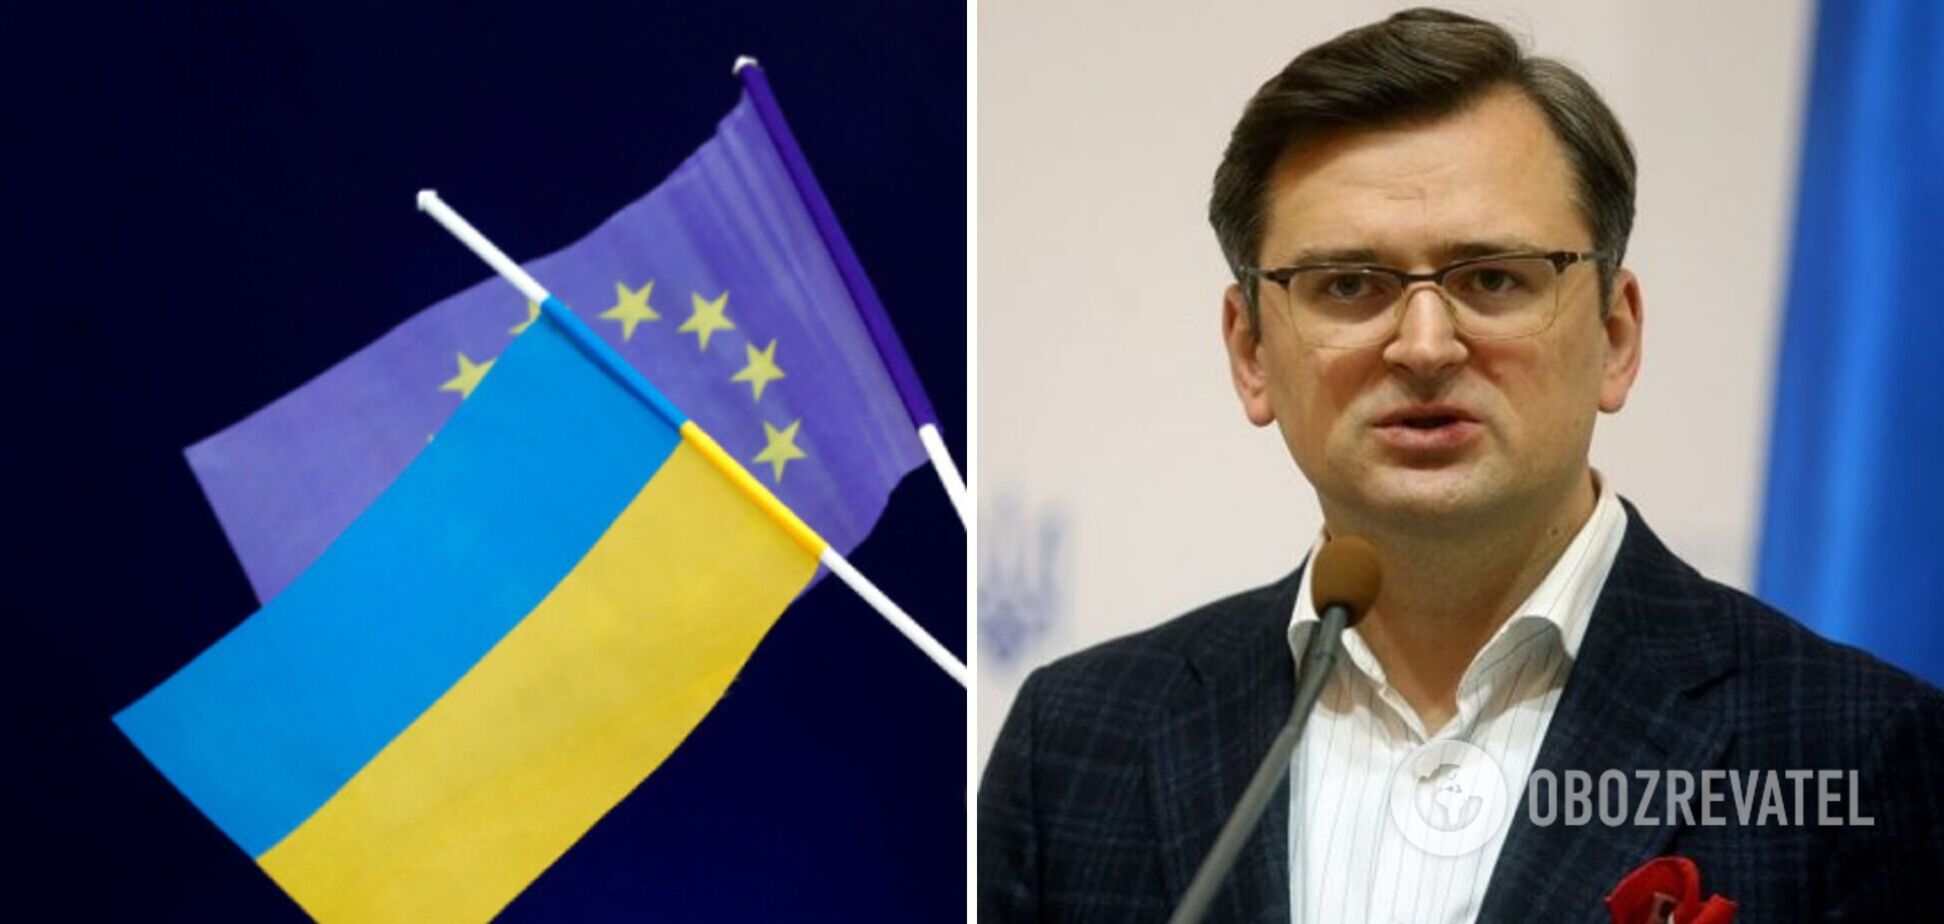 Місце у передпокої ЄС Україні не підходить. Світ знову не вчиться на своїх помилках